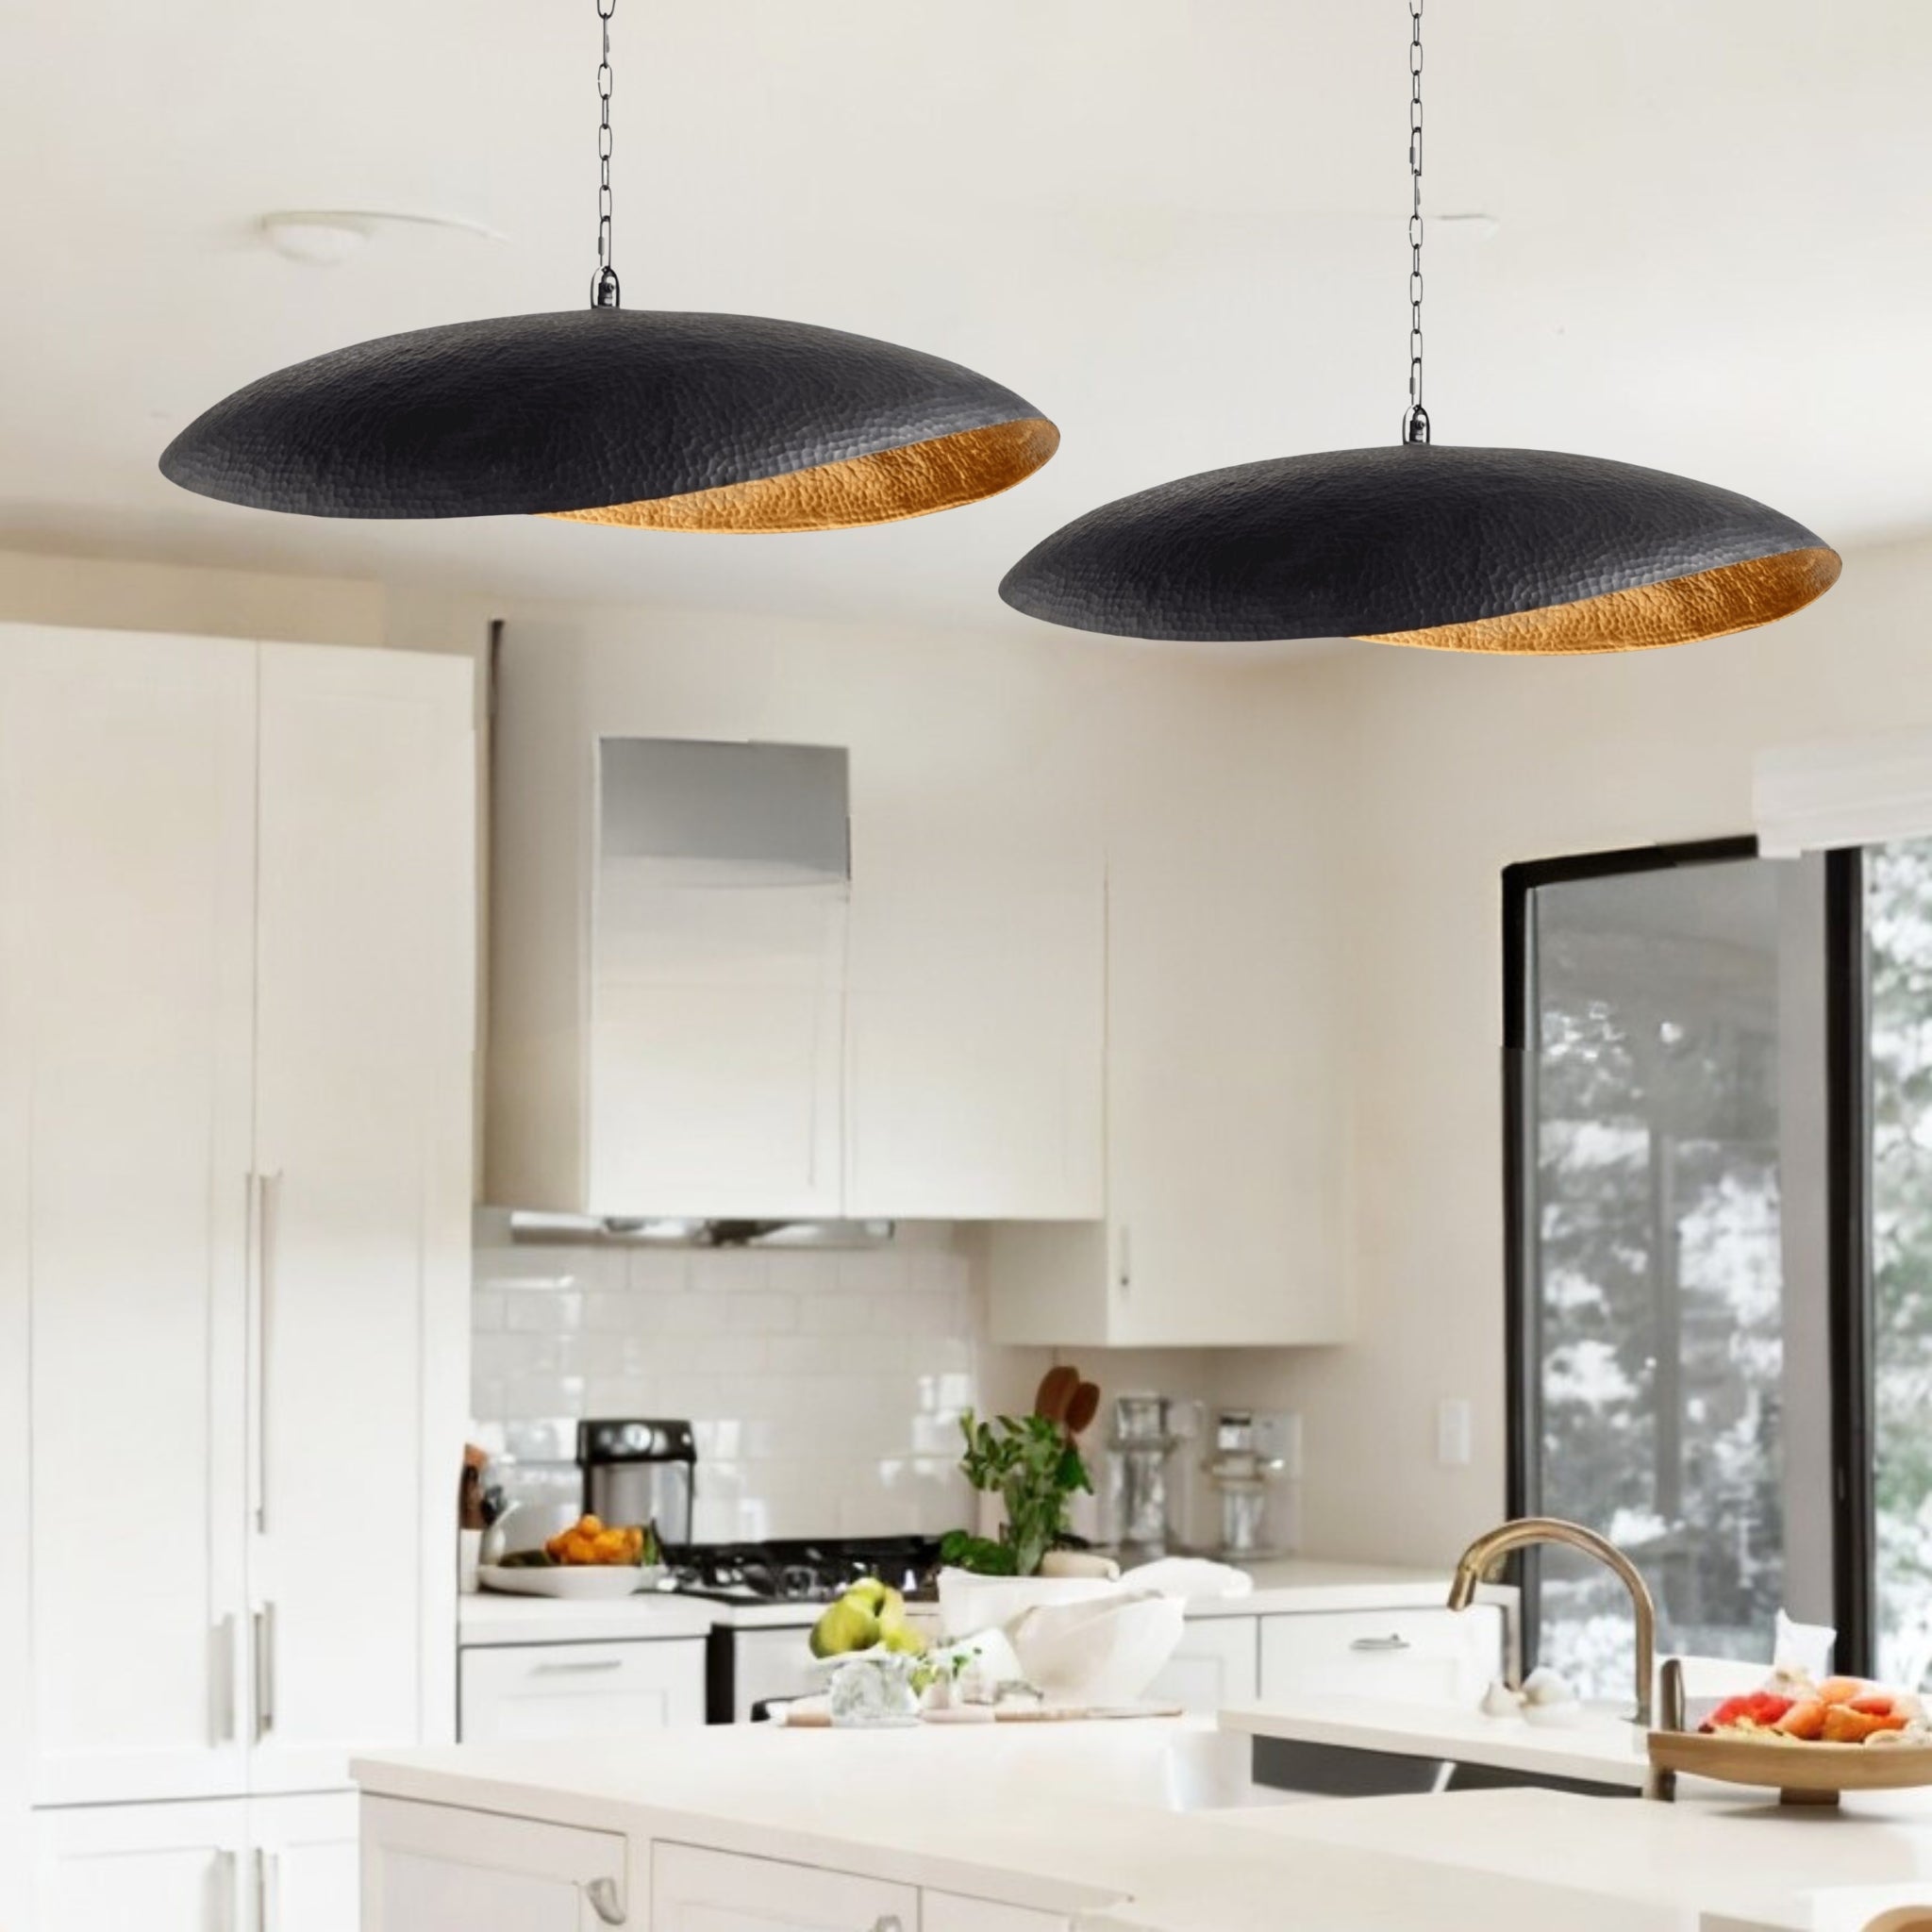 Set of 2 Black Hammered Leaf Ceiling Light, suitable for kitchen islands